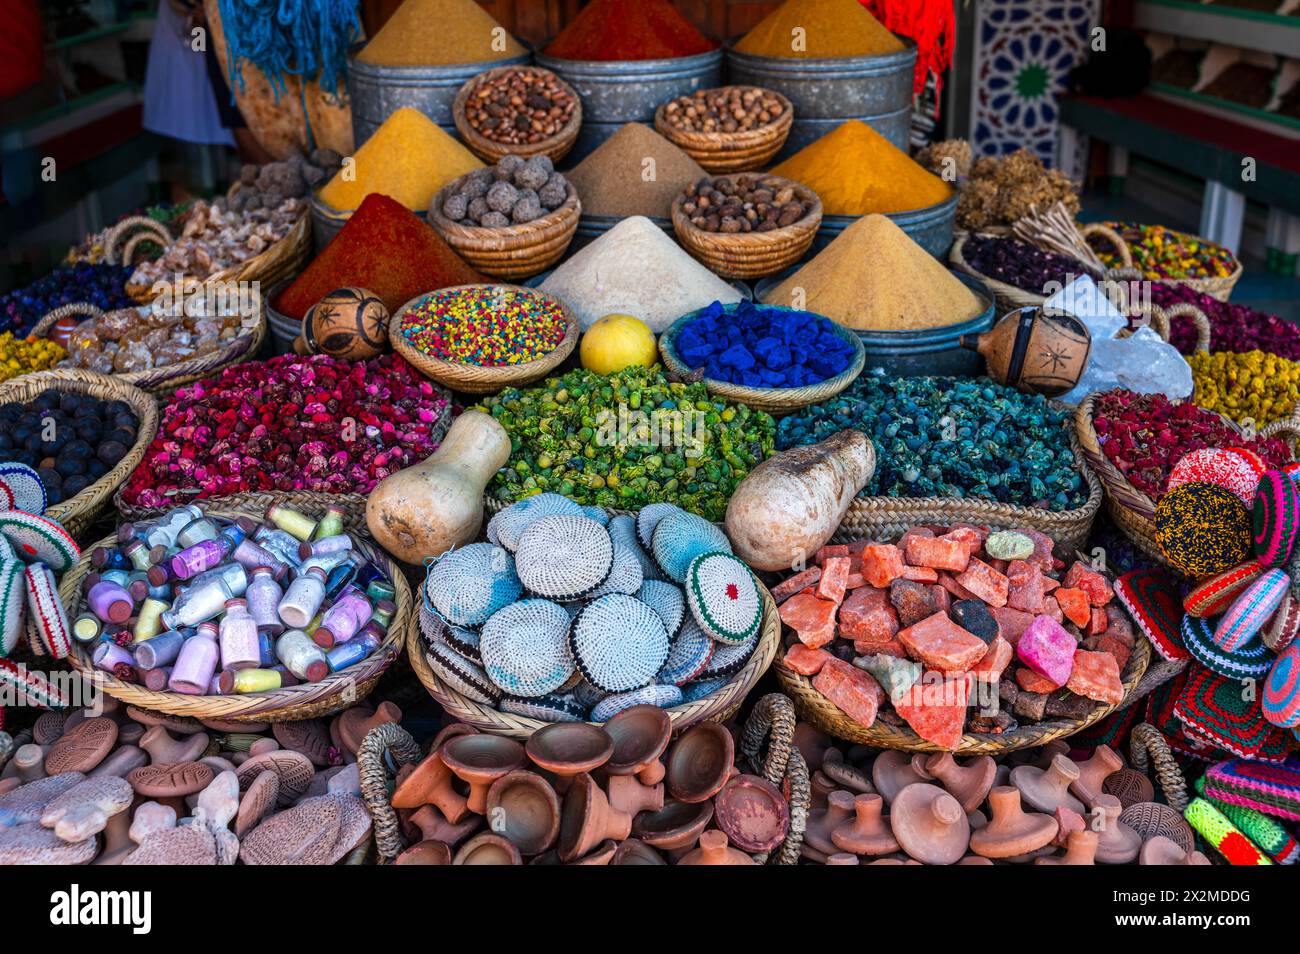 Farbenfrohe Auswahl an Gewürzen, getrockneten Früchten und traditionellem marokkanischem Kunsthandwerk, das auf einem lokalen Markt in Marokko präsentiert wird, präsentiert wird Stockfoto